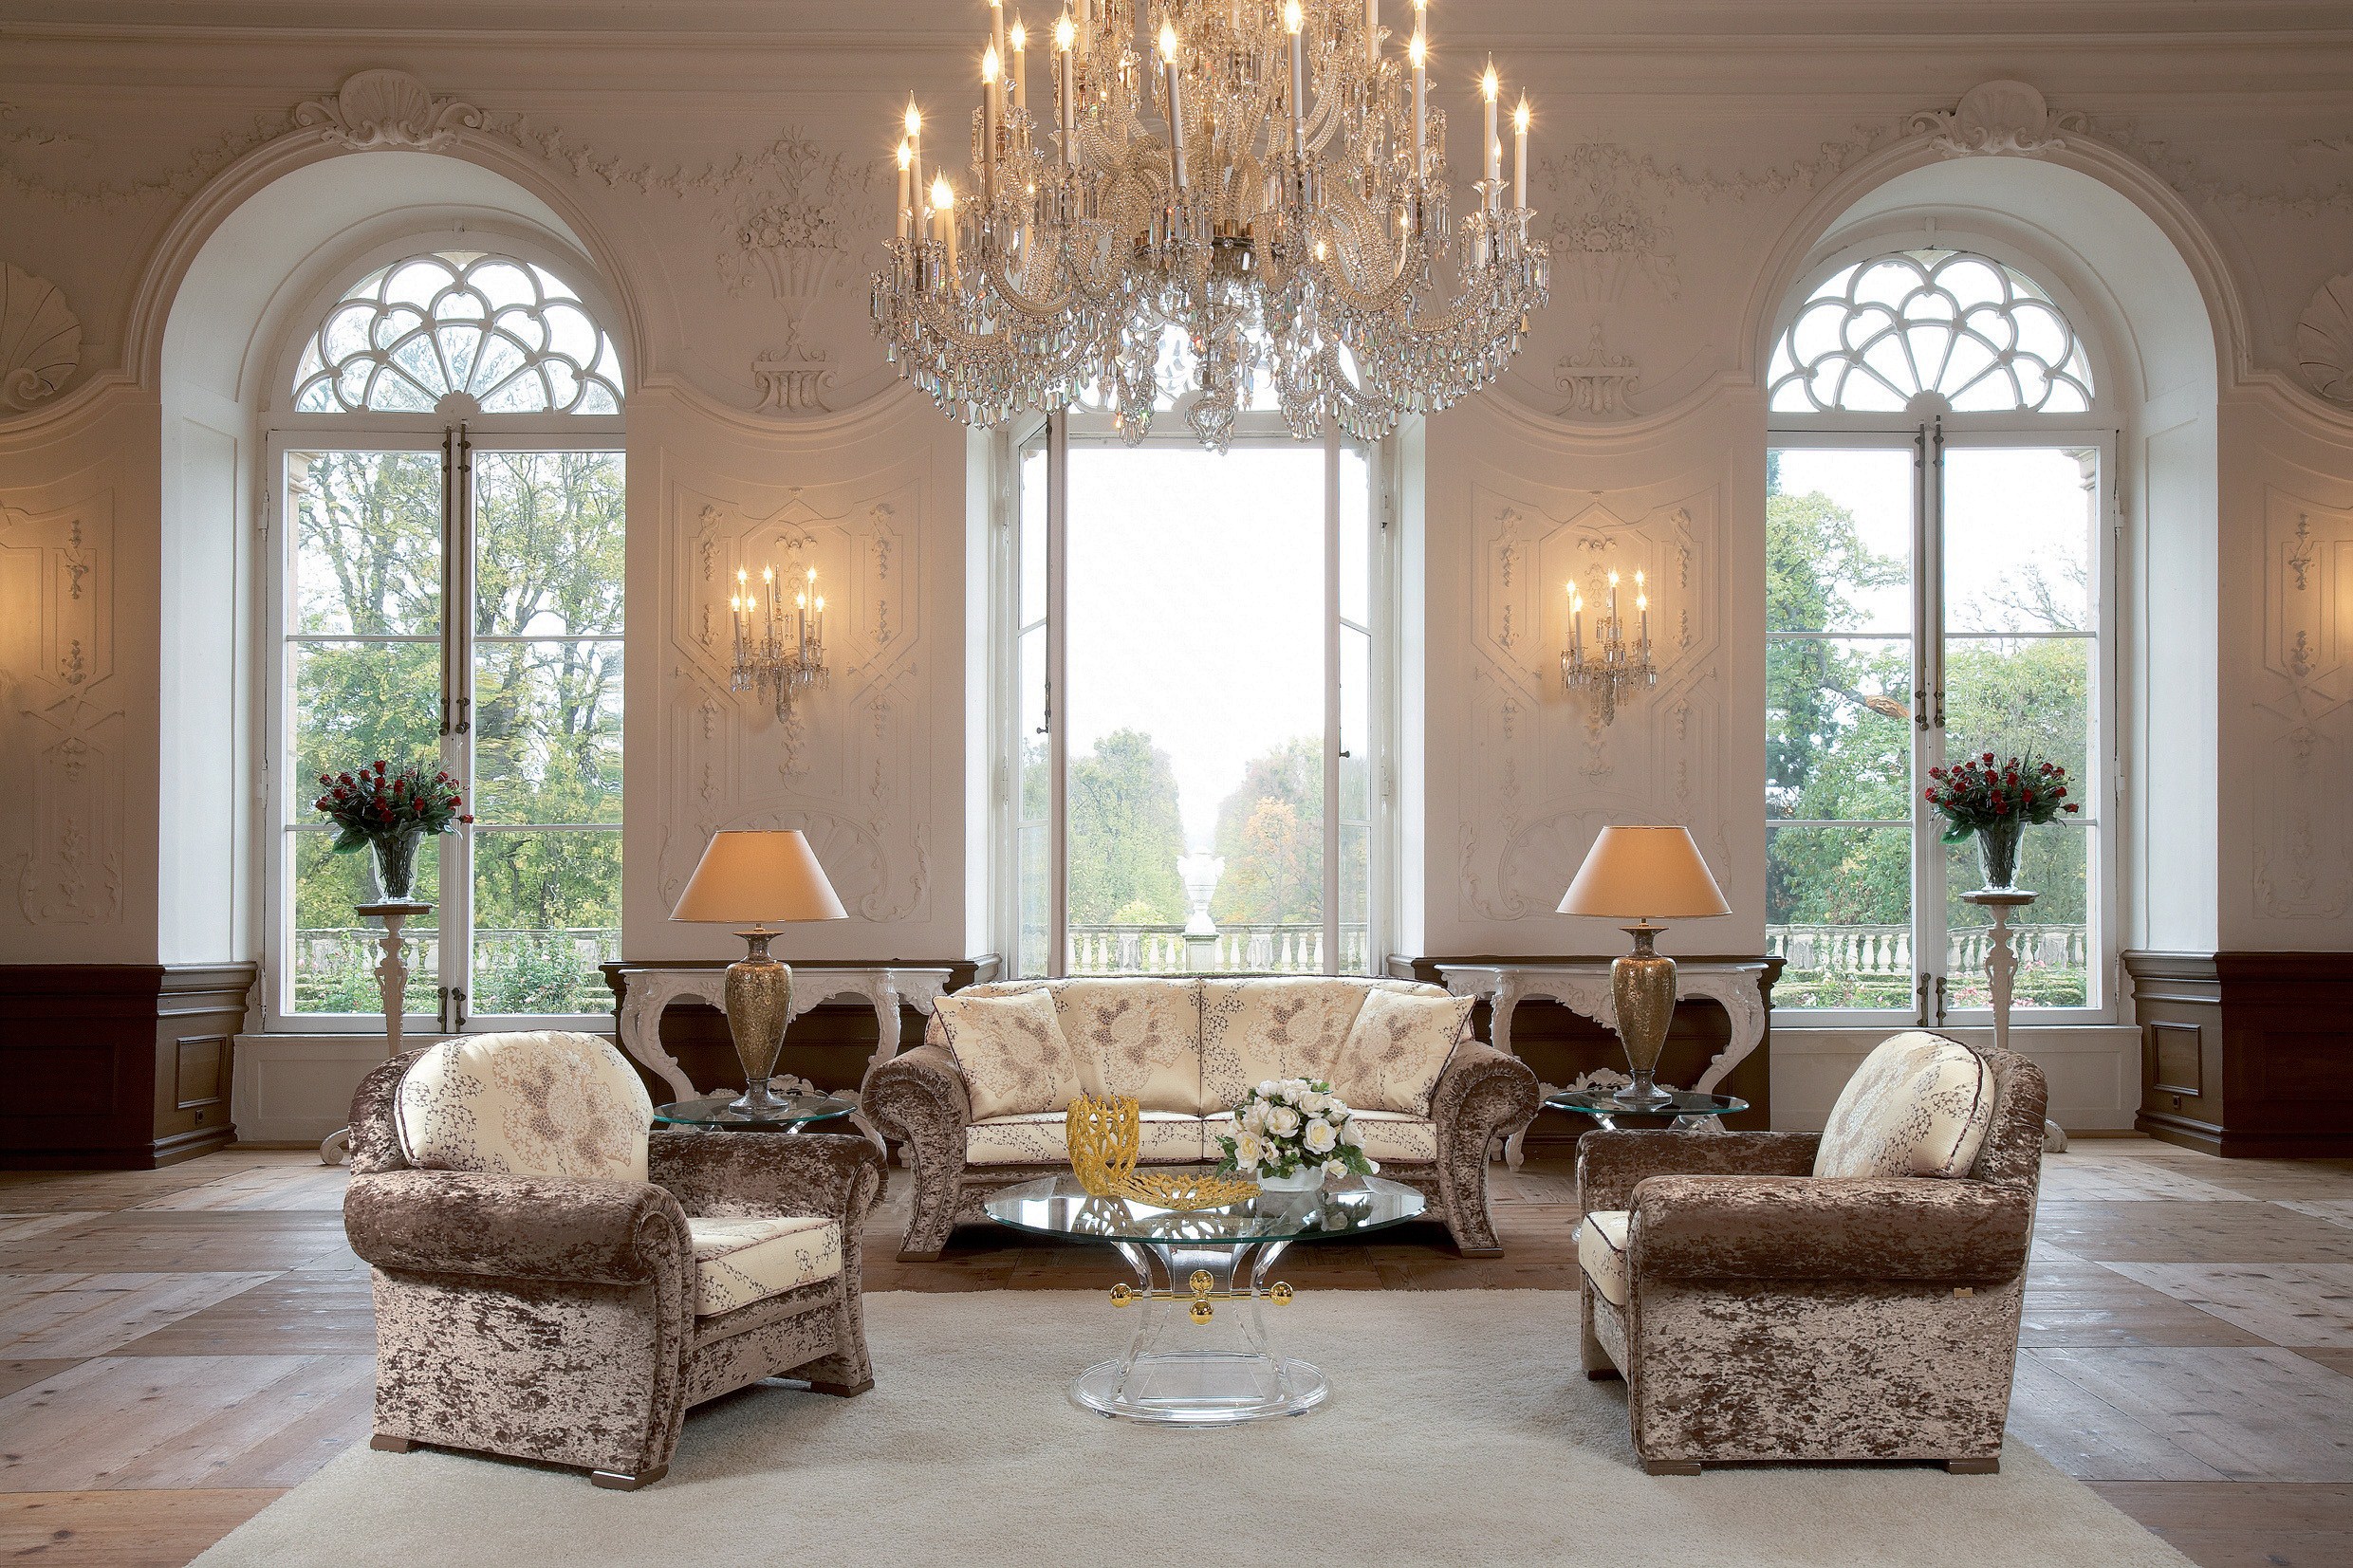 Hall living room. Красивый интерьер. Классический стиль в интерьере. Венецианский стиль в интерьере гостиной. Элегантный стиль в интерьере.